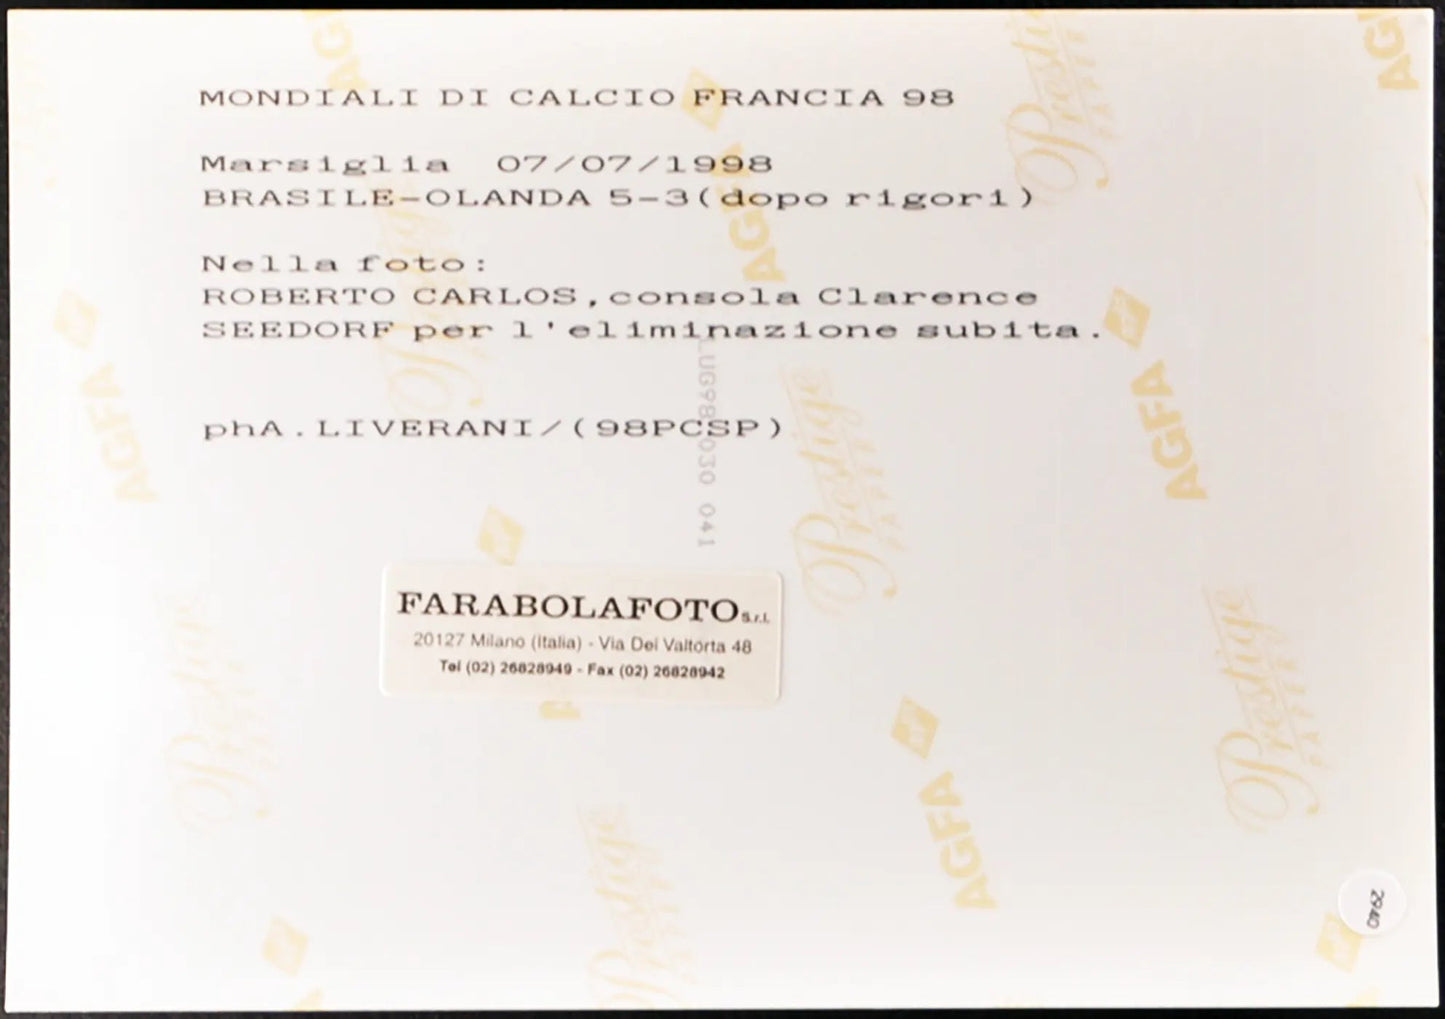 Roberto Carlos Seedorf Mondiali Francia 98 Ft 2940 - Stampa 20x15 cm - Farabola Stampa ai sali d'argento